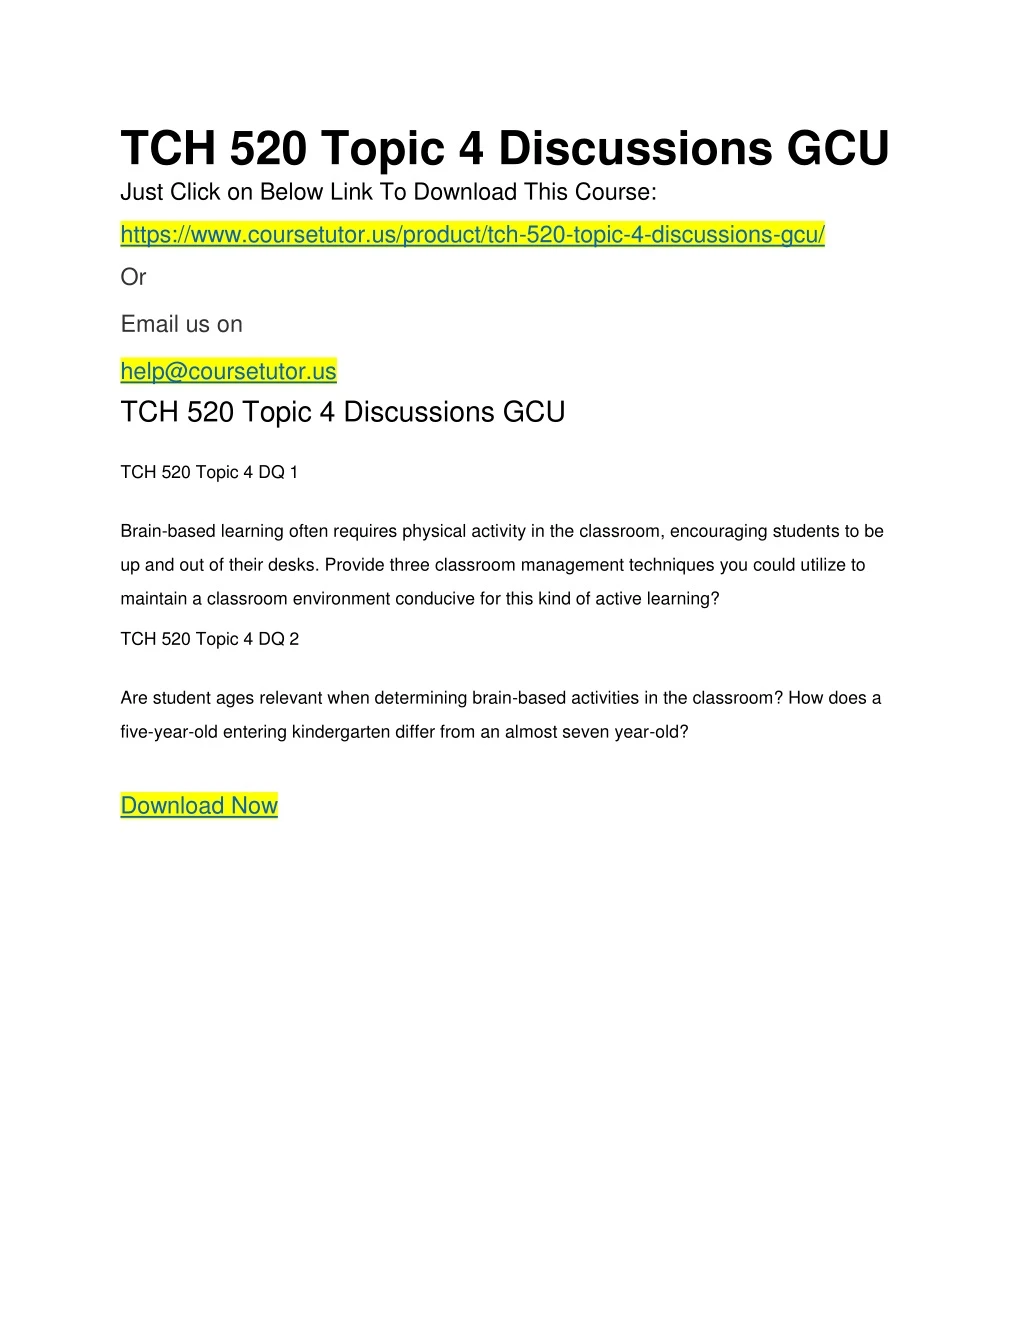 tch 520 topic 4 discussions gcu just click